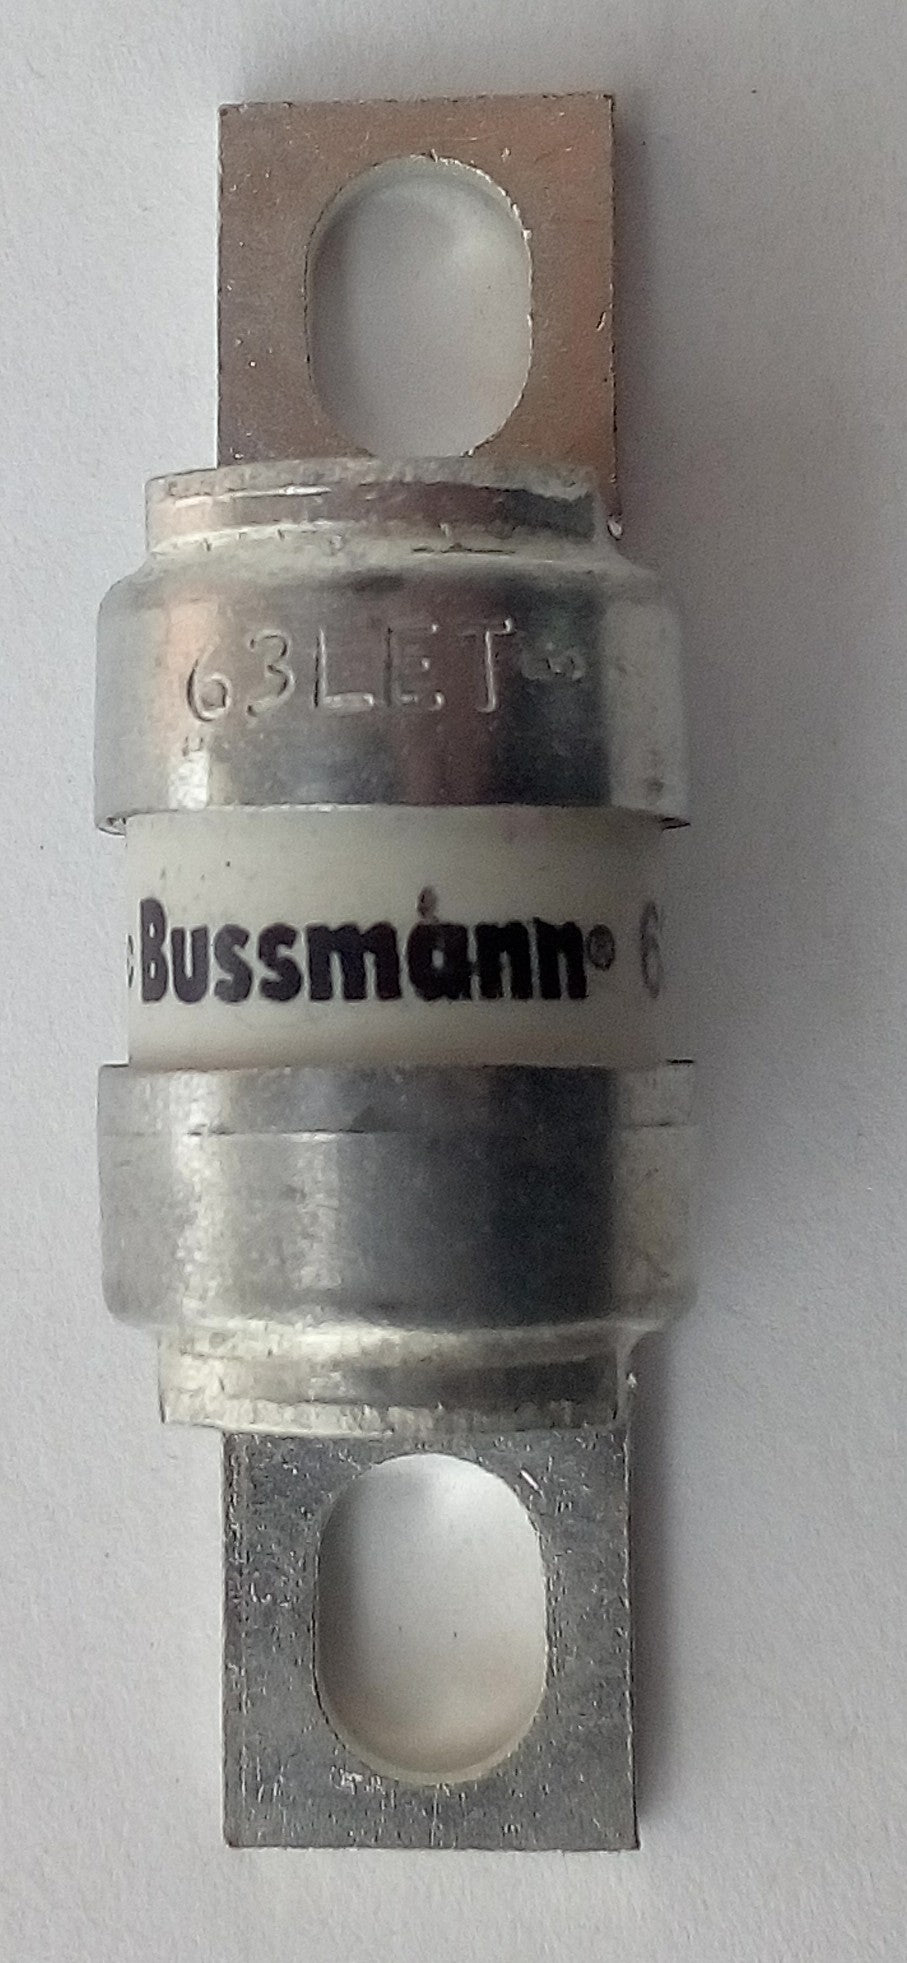 Fusible Bussmann 63LET